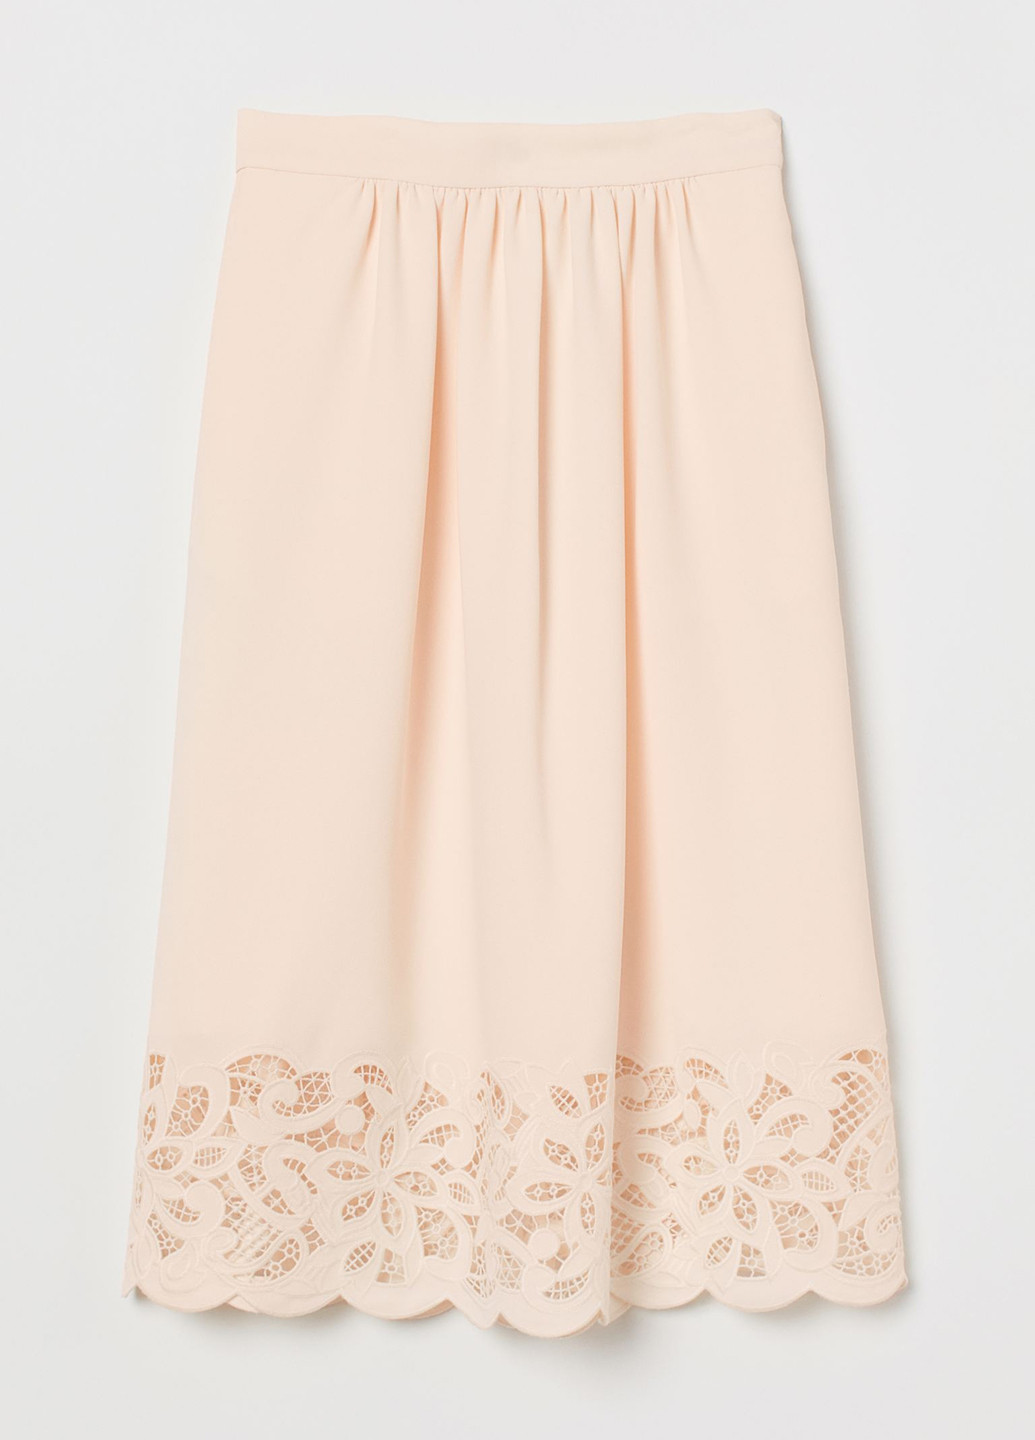 Персиковая кэжуал однотонная юбка H&M а-силуэта (трапеция)